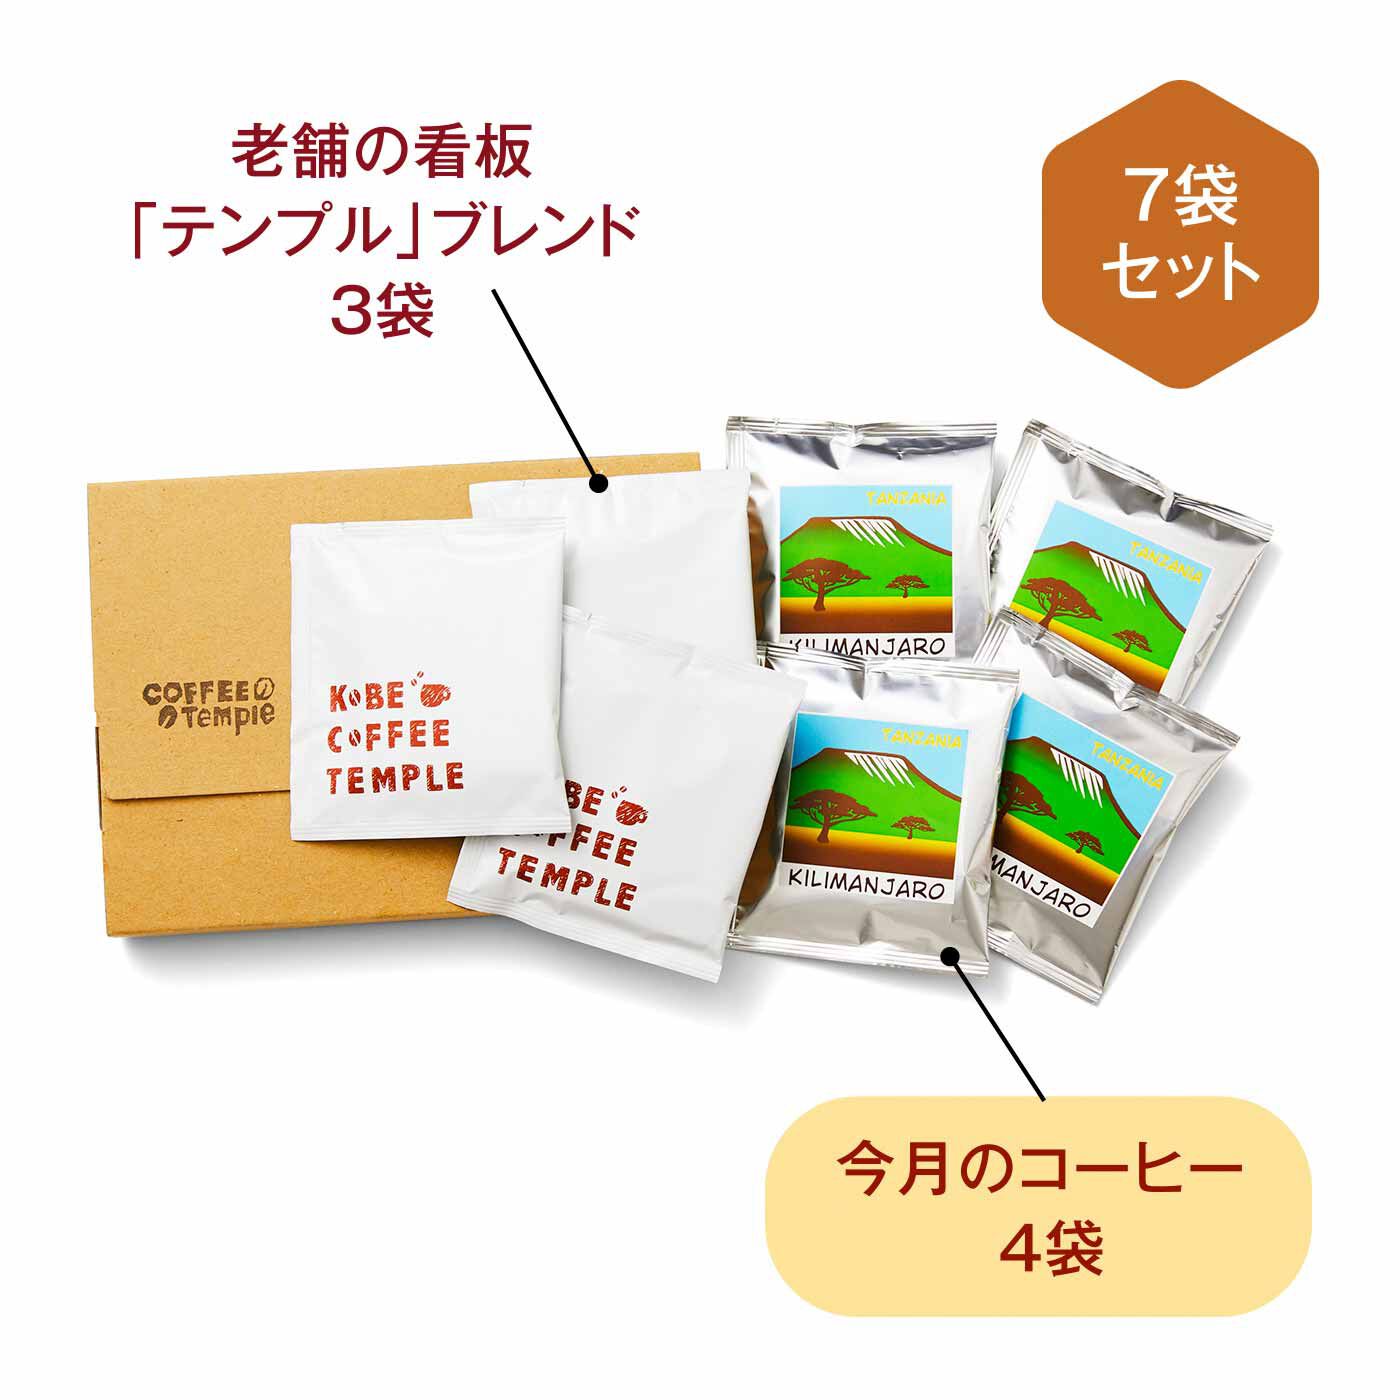 FELISSIMO PARTNERS|神戸老舗喫茶店temple 自家焙煎ドリップコーヒーパックの会（12回予約）|●1回のお届けセット例です。